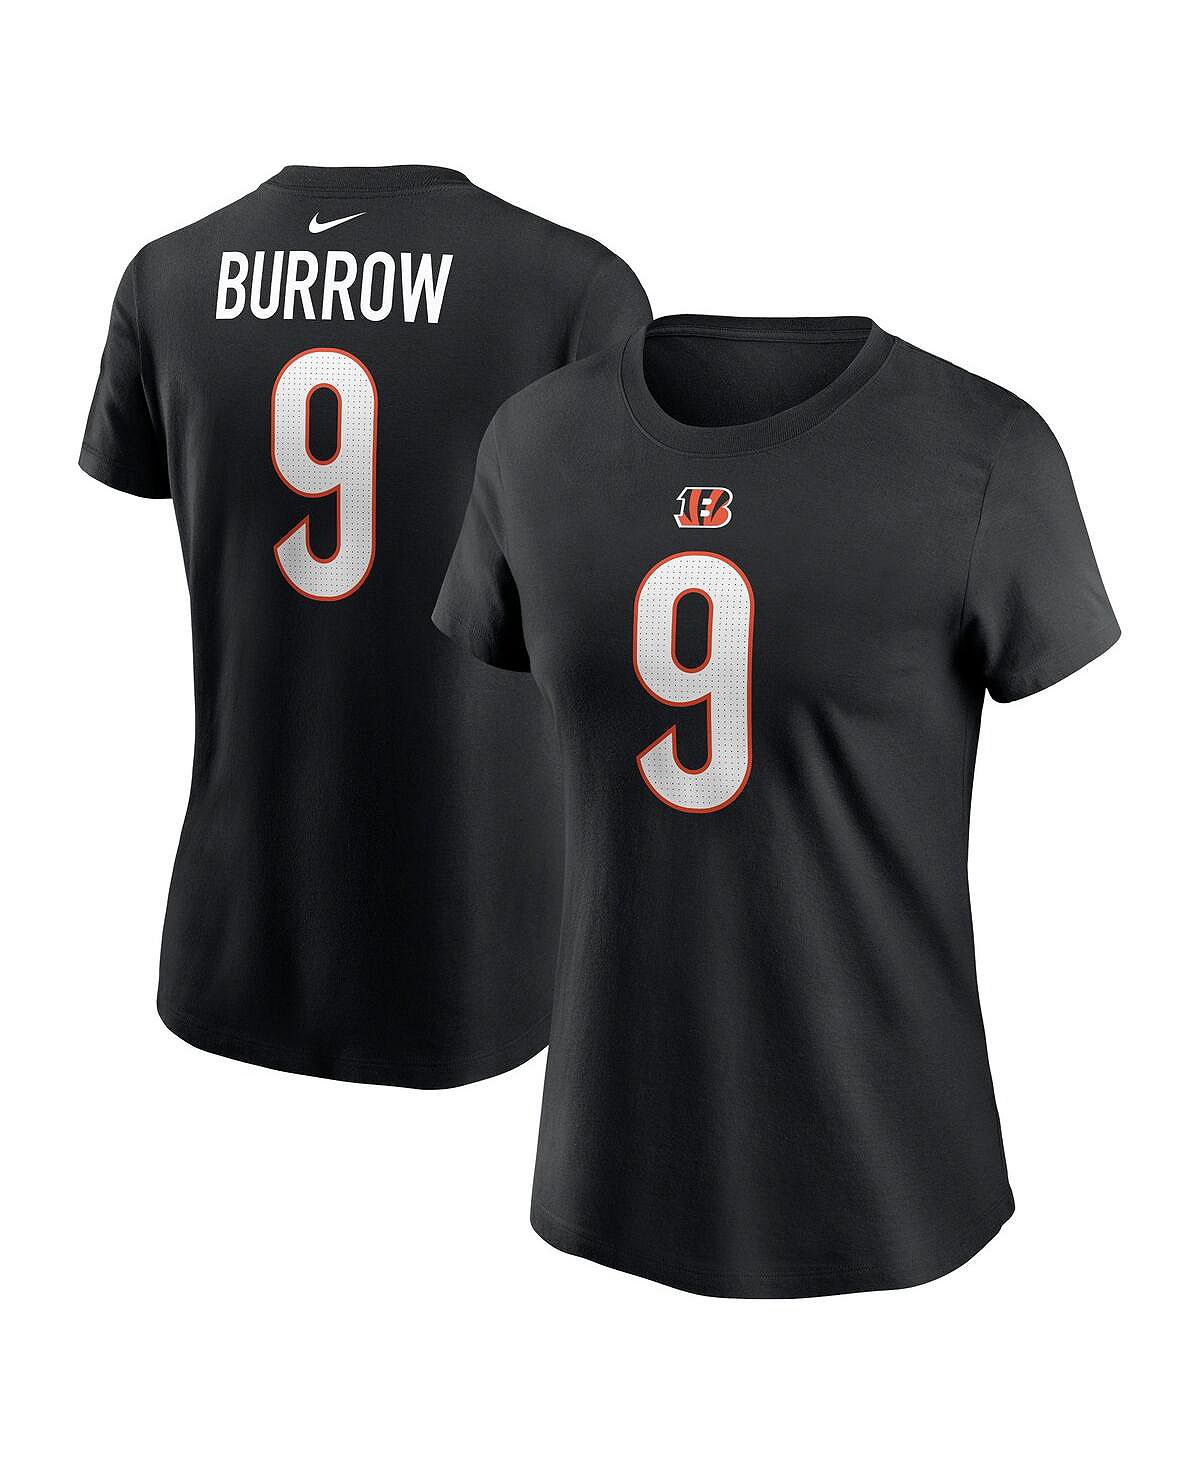 Женская черная футболка с именем и номером игрока команды Cincinnati Bengals Joe Burrow Nike, черный